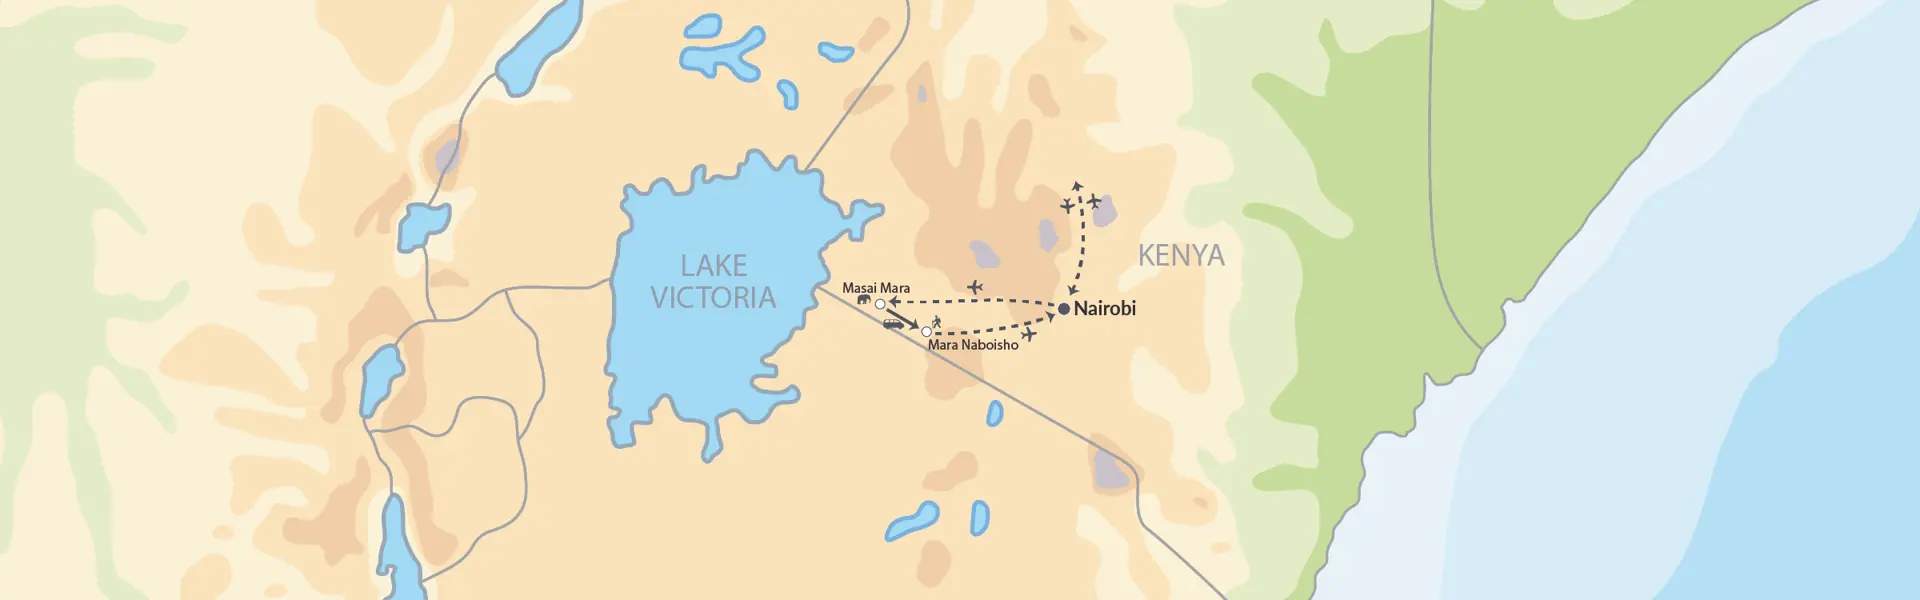 8298 Masai Safari I Kenya